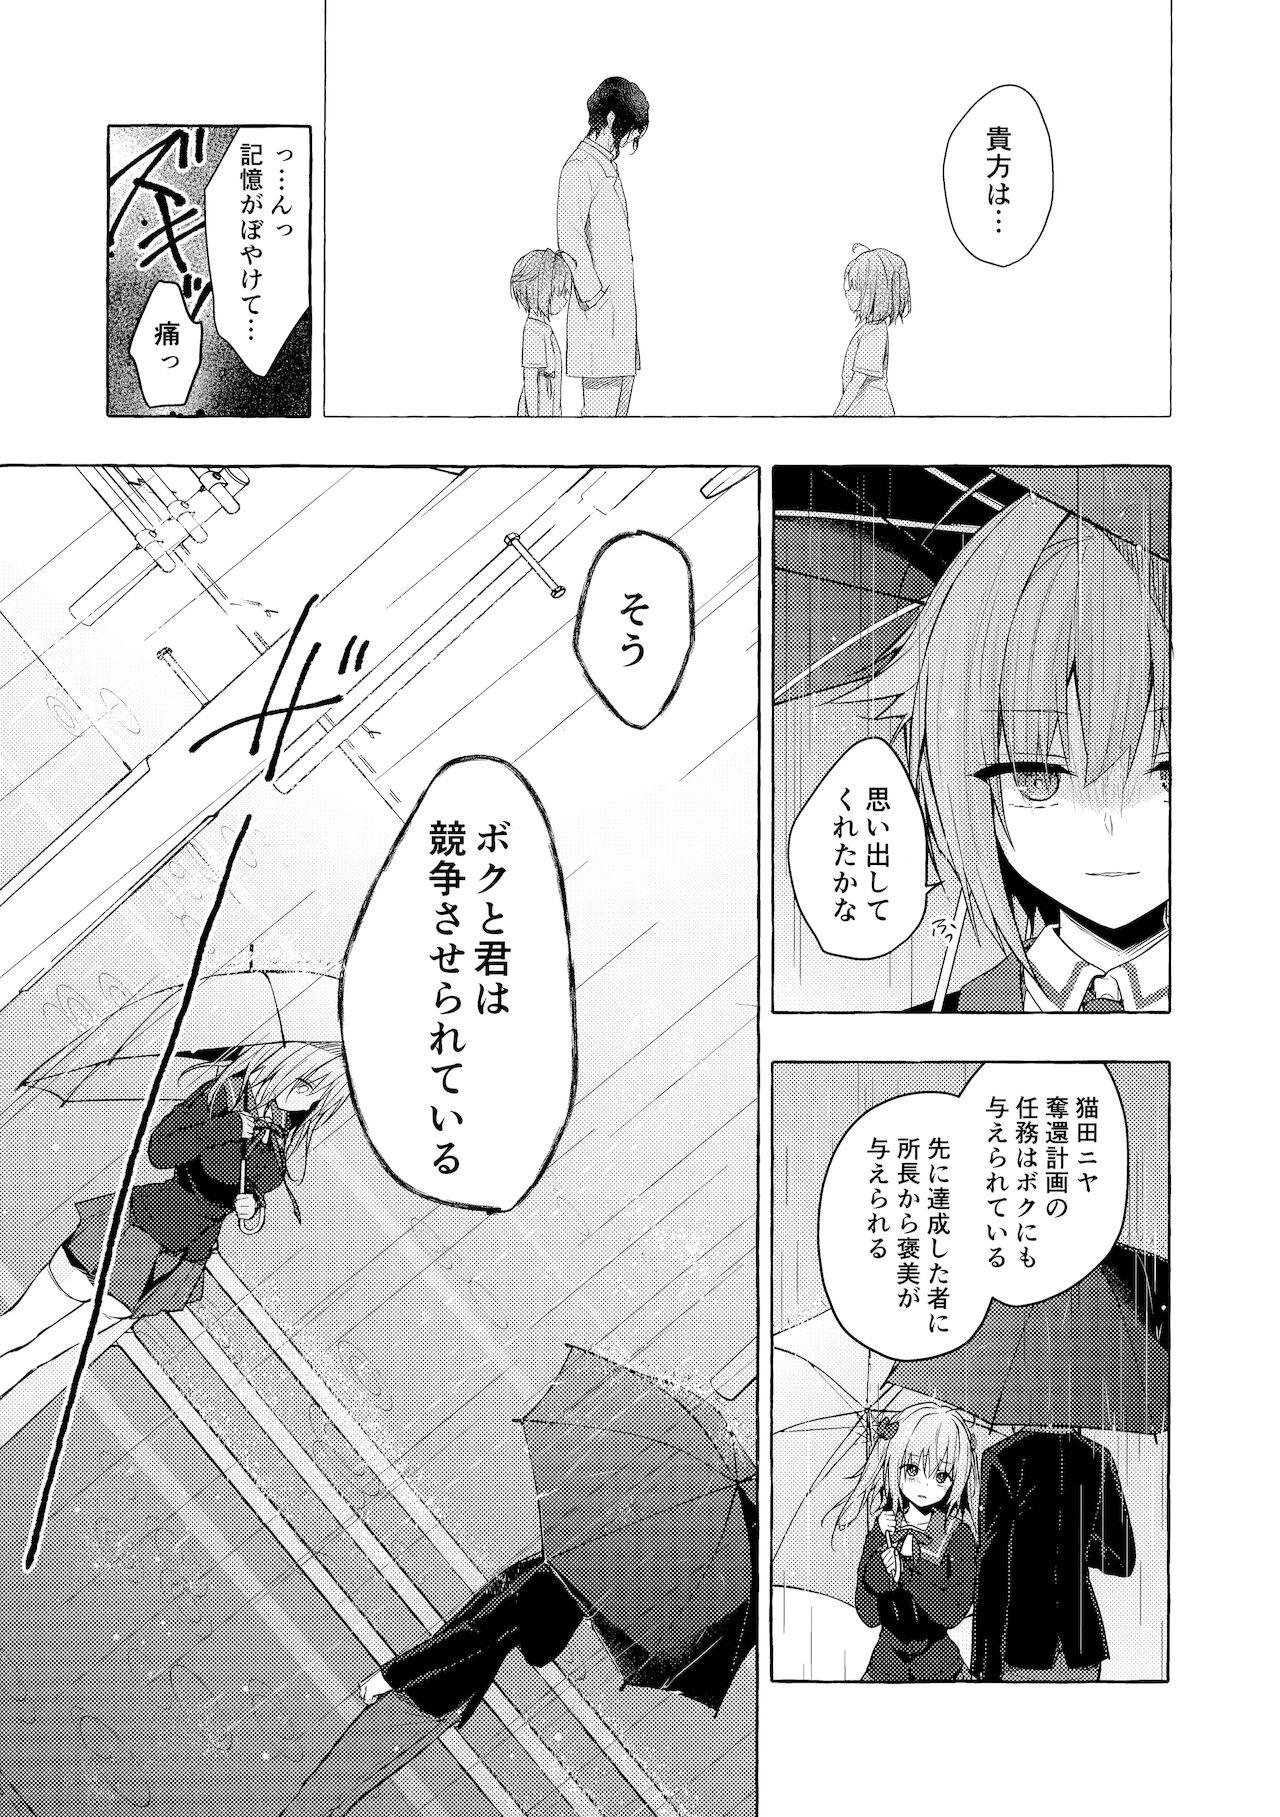 Pauzudo (Mega Akihabara Doujinsai 1) [Kinokonomi (konomi)] Nyancology11 -Usami-san to Himitsu no Apart Ouse- - Original Vergon - Page 8